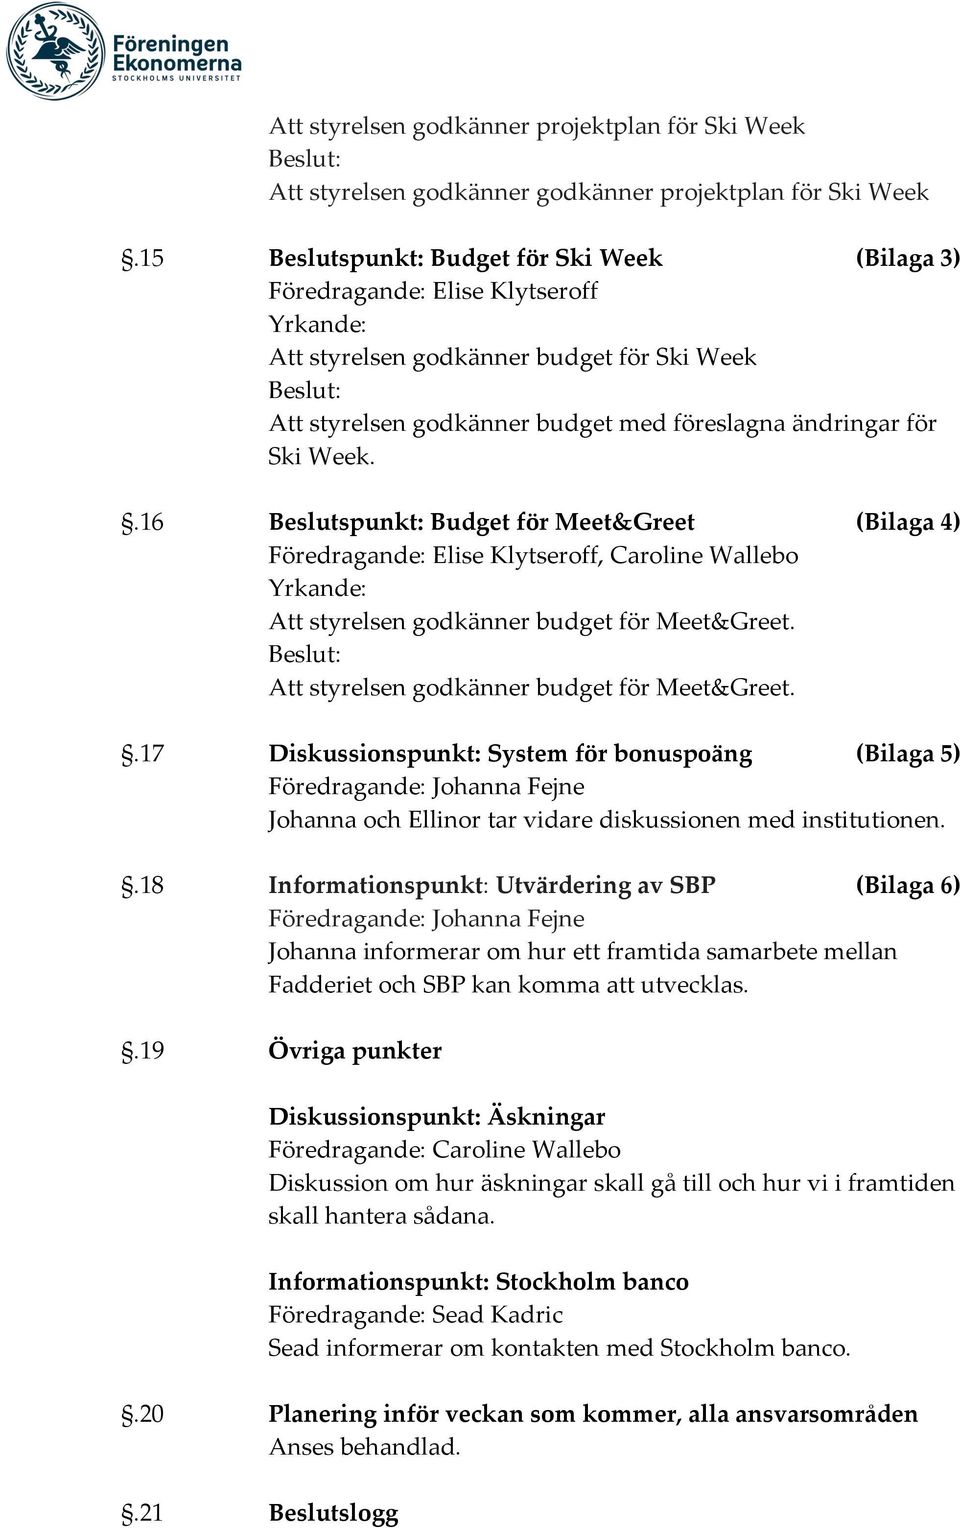 .16 Beslutspunkt: Budget för Meet&Greet (Bilaga 4), Caroline Wallebo Att styrelsen godkänner budget för Meet&Greet.